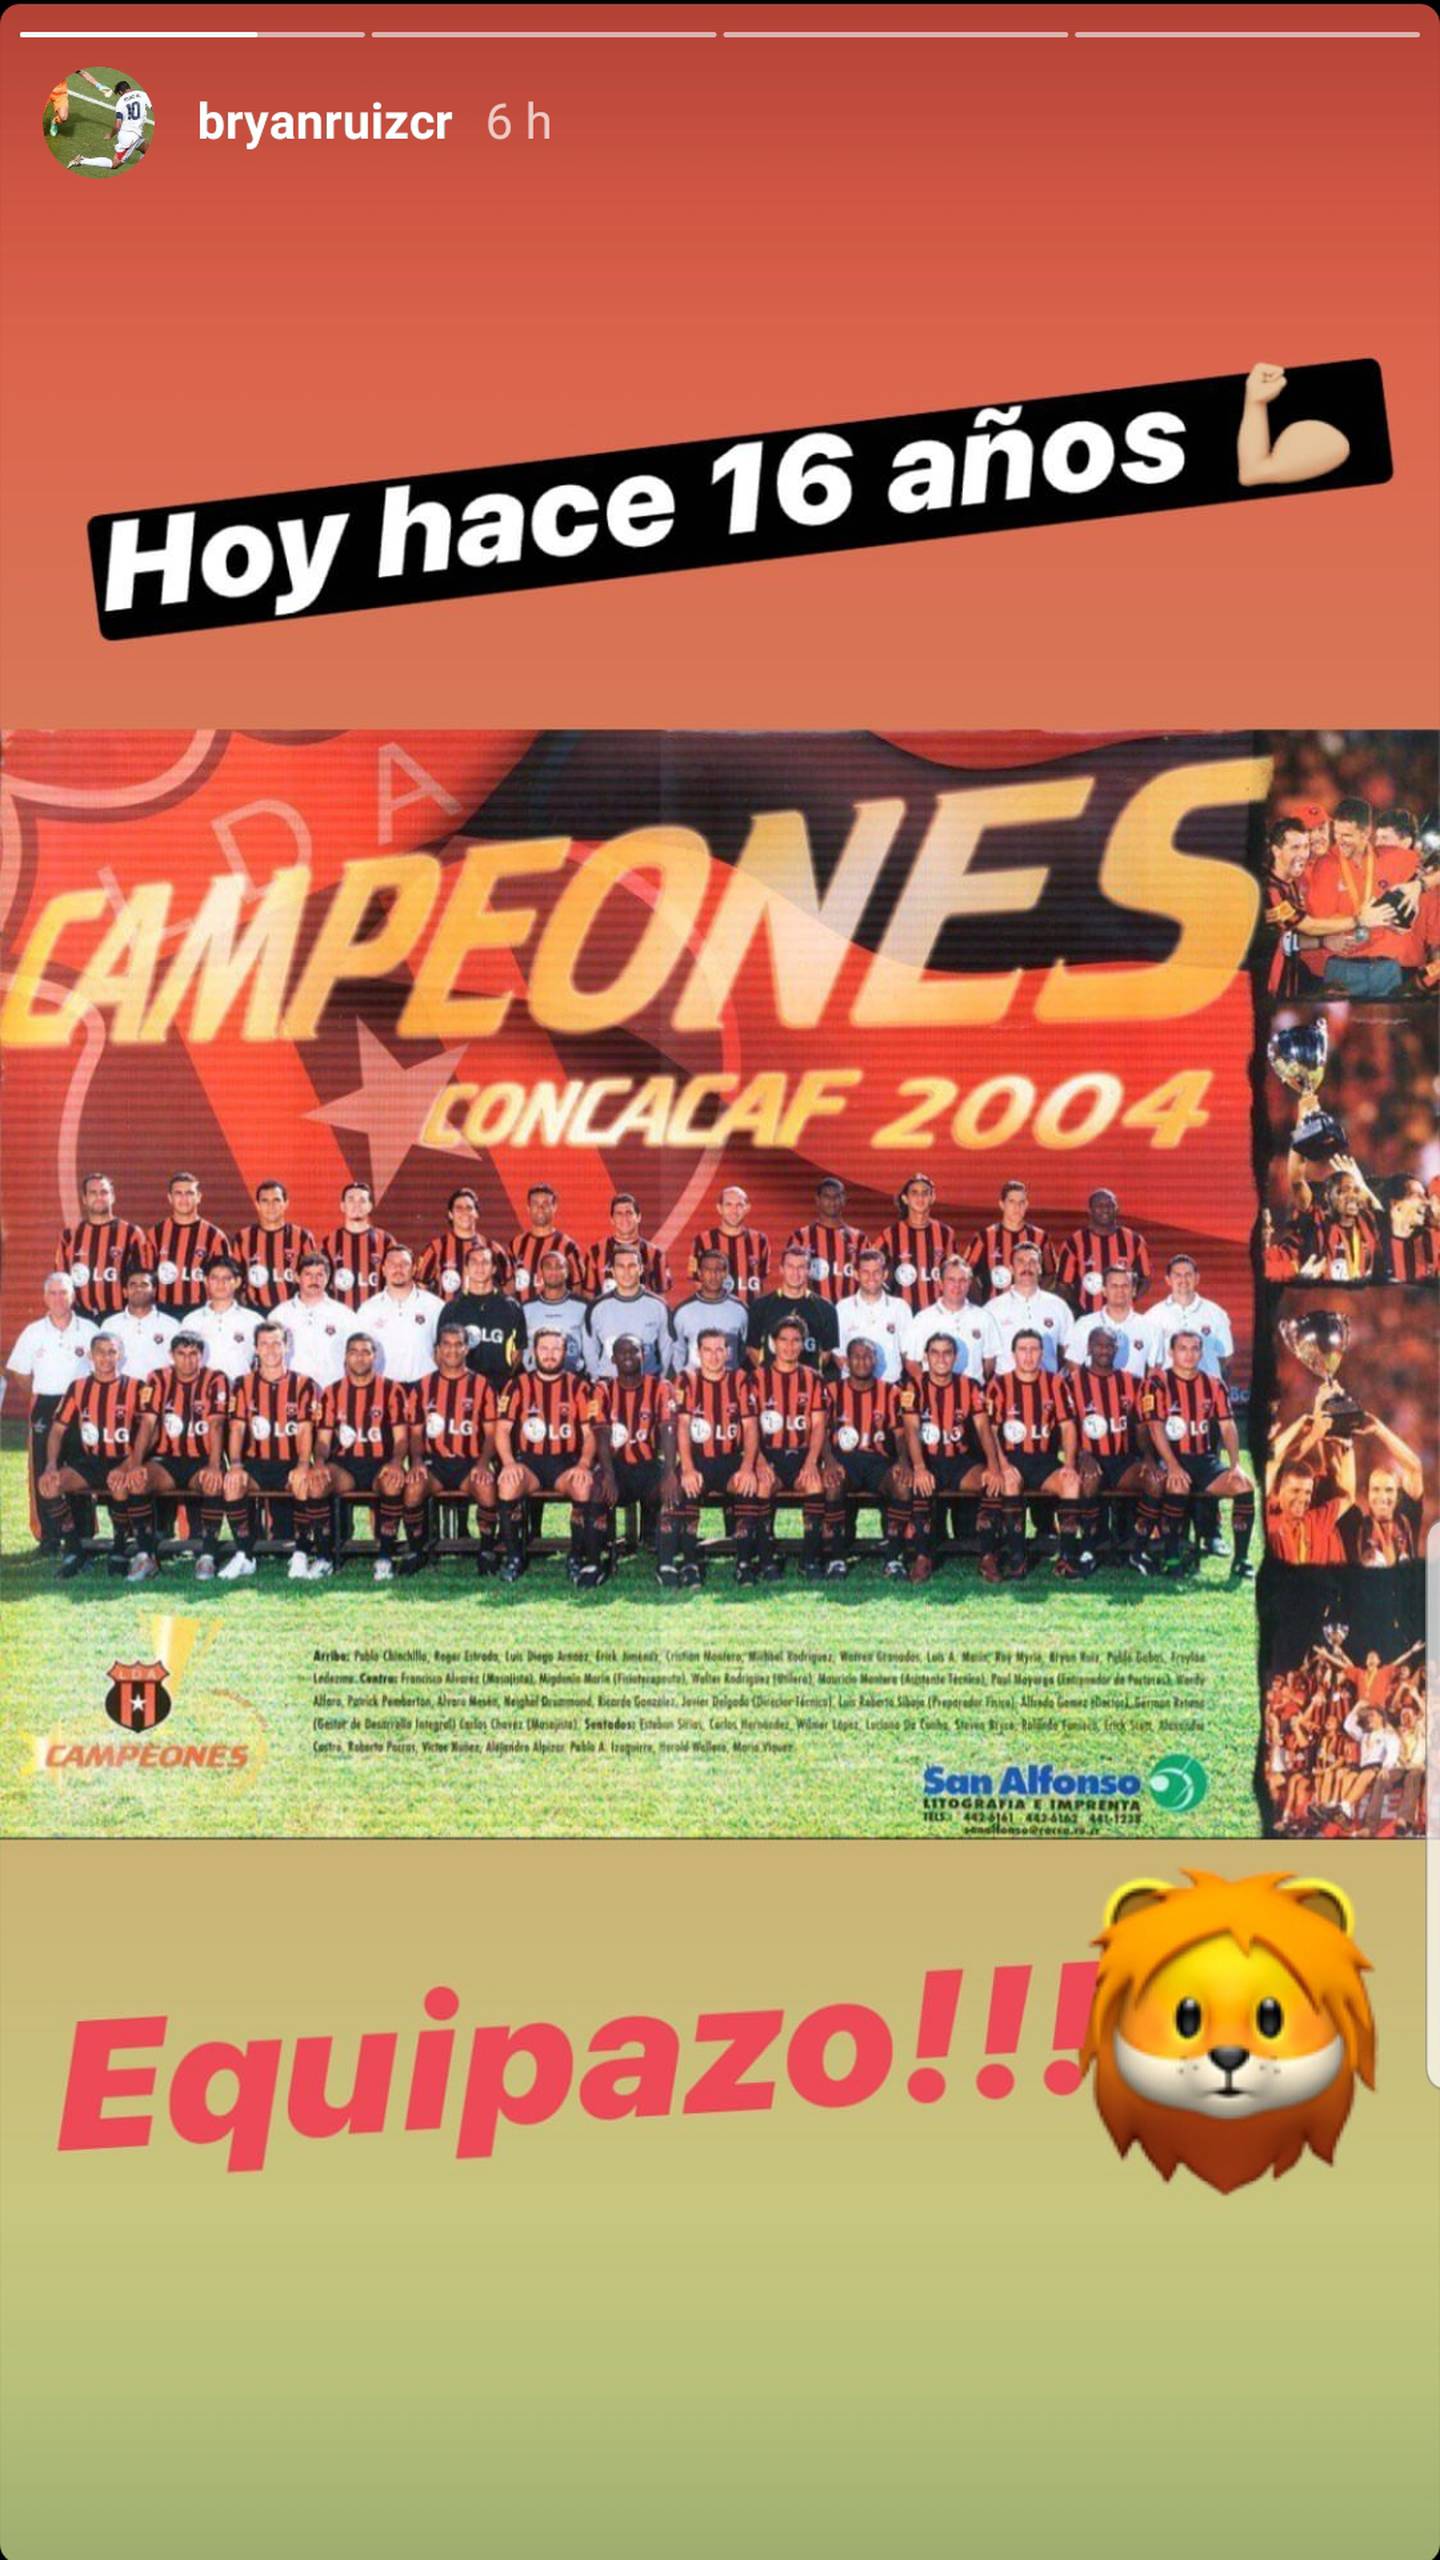 Bryan Ruiz se manifestó sobre el aniversario 16 de aquella noche en la que la Liga derrotó a Saprissa en la final de la Concacaf del 2004. Fotografía: Captura Instagram